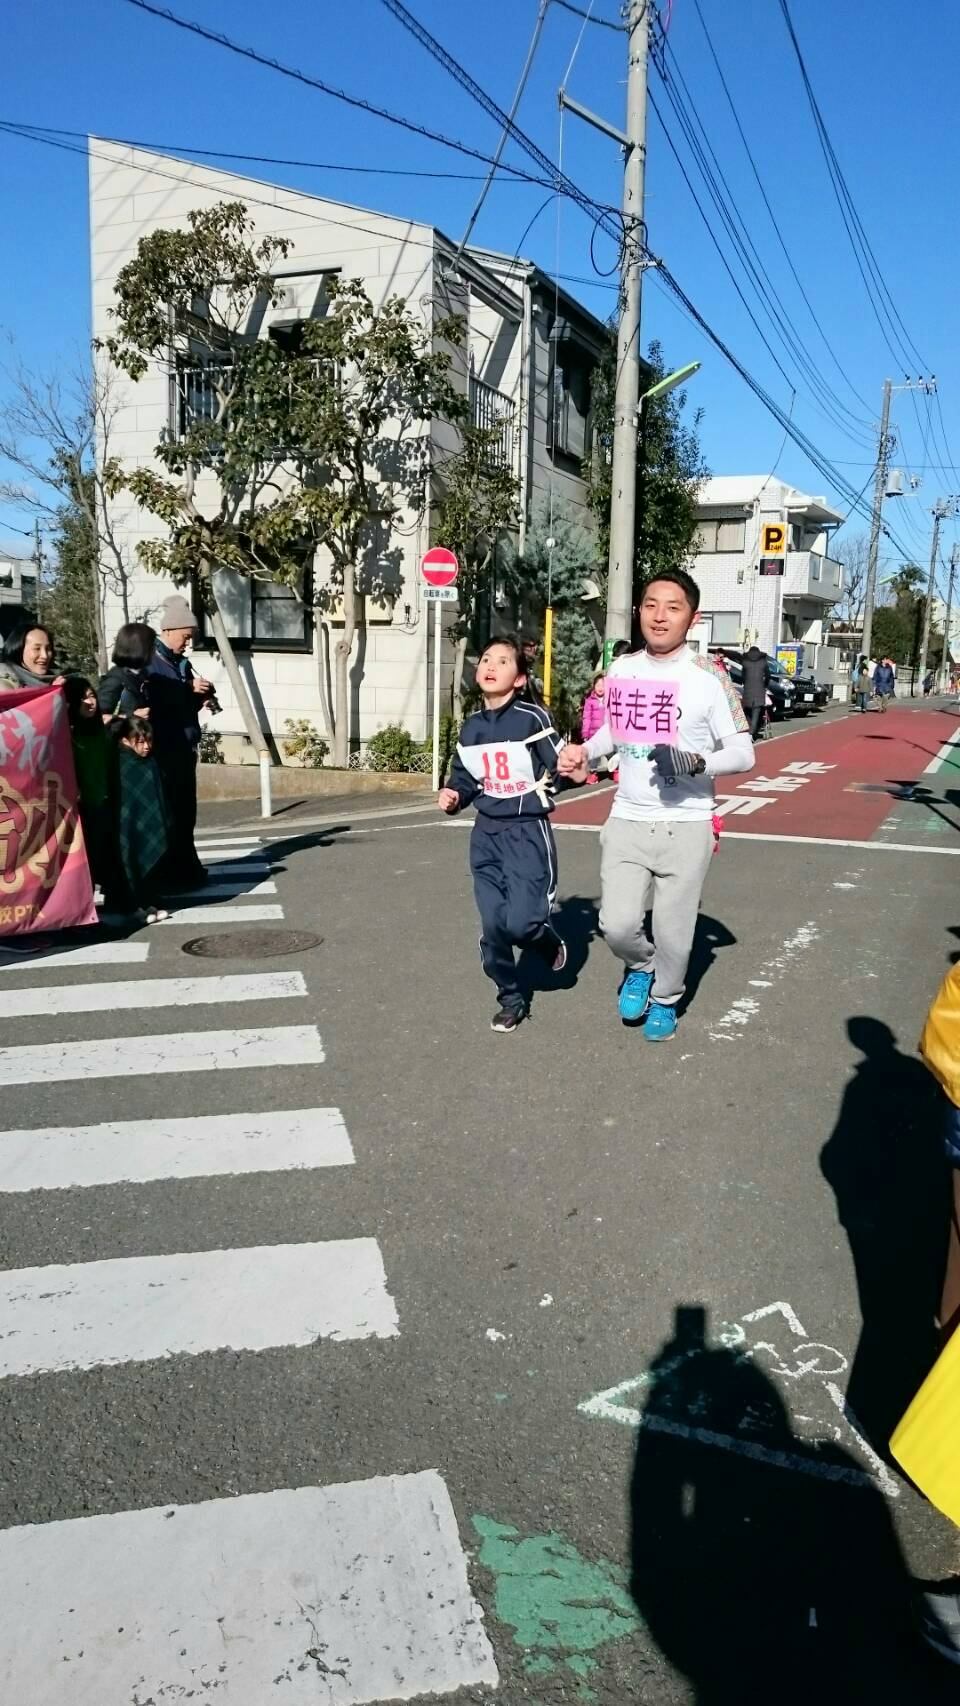 上野毛地区のマラソン大会に長女の伴走で参加。近隣の皆さんから温かい声援を頂いて、無事完走しました。